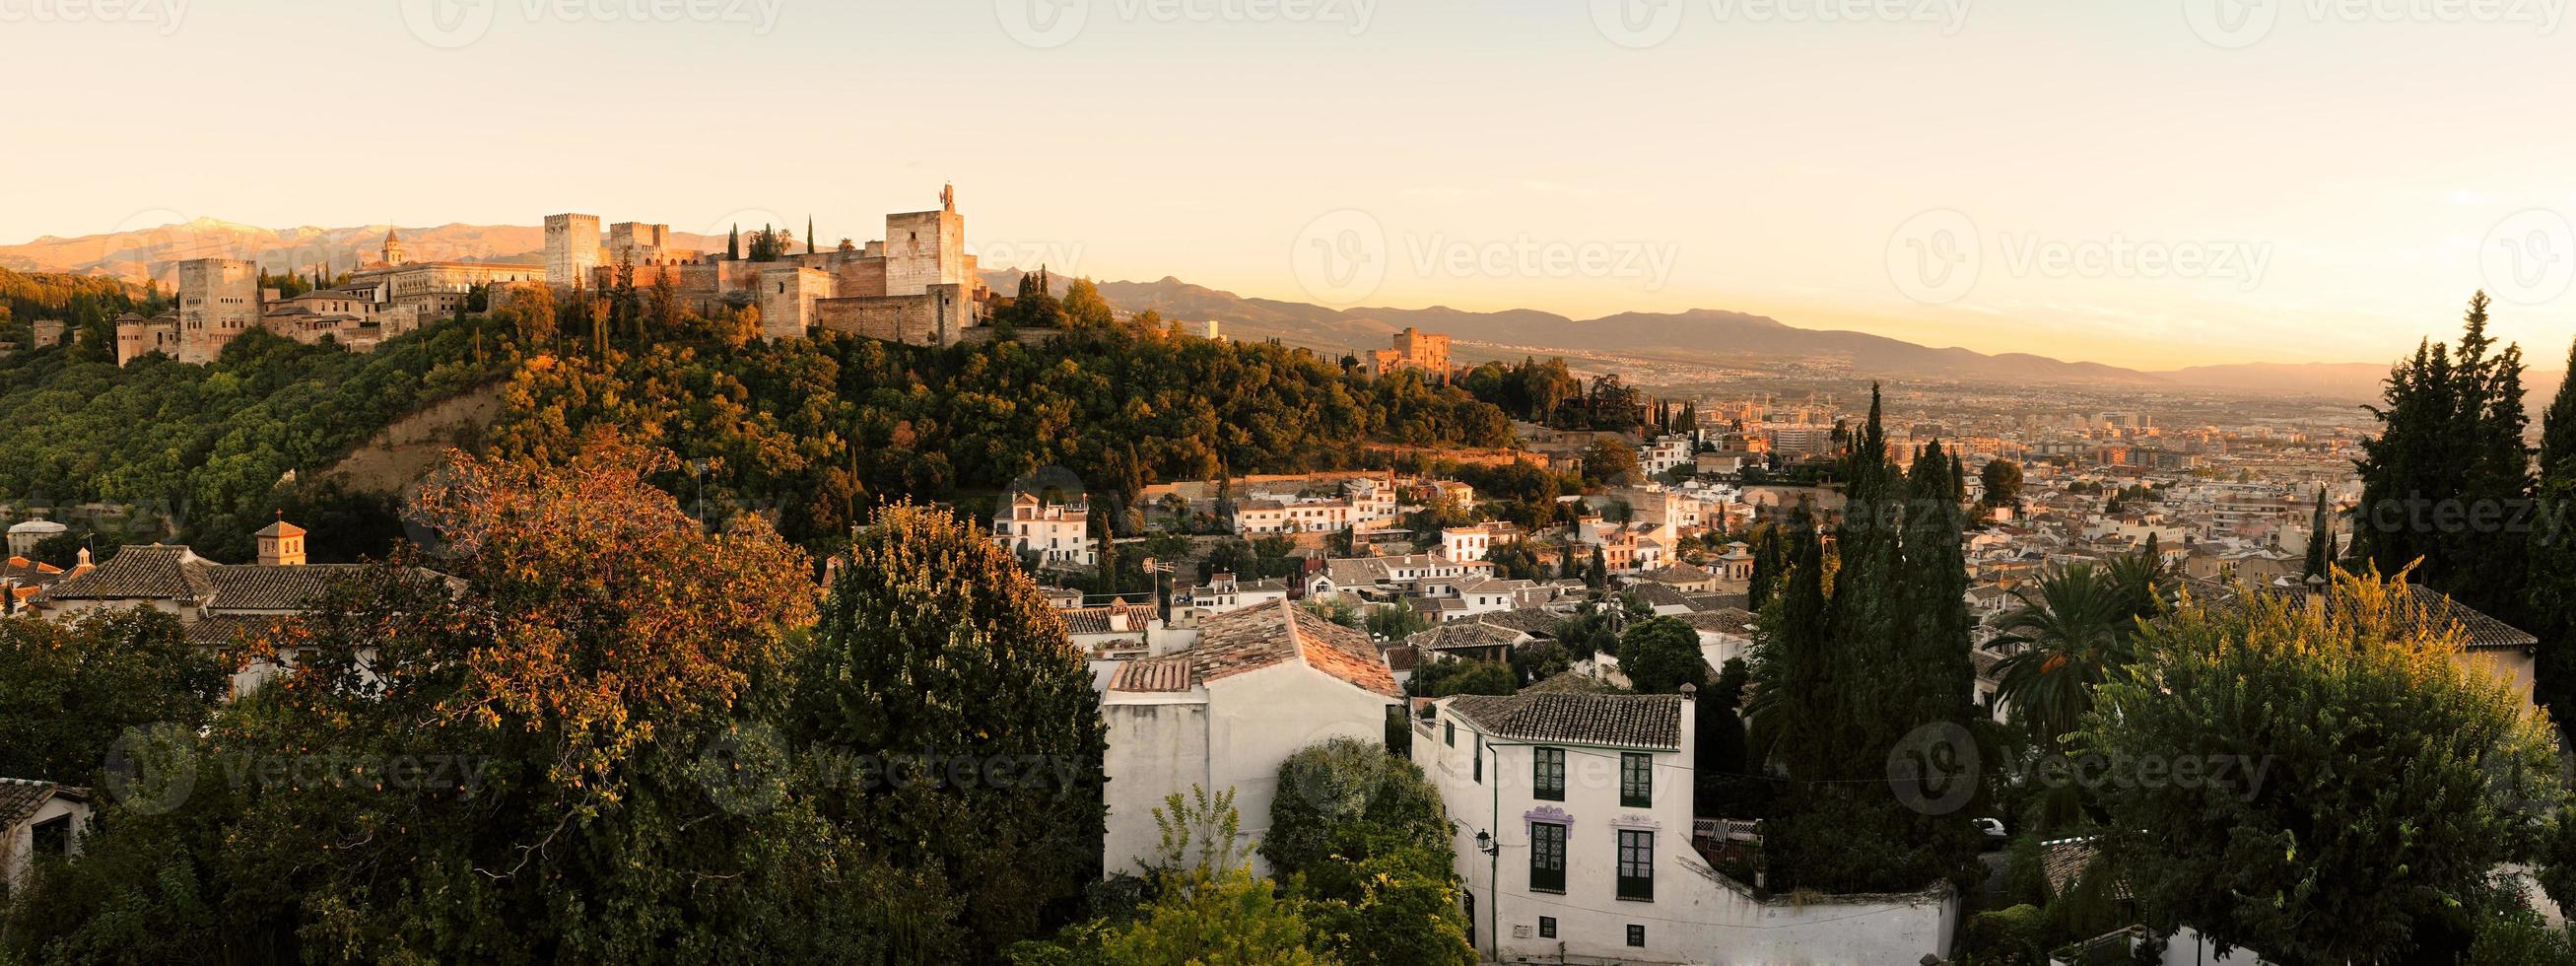 panorama av alhambra och granada landskap från albaicin foto